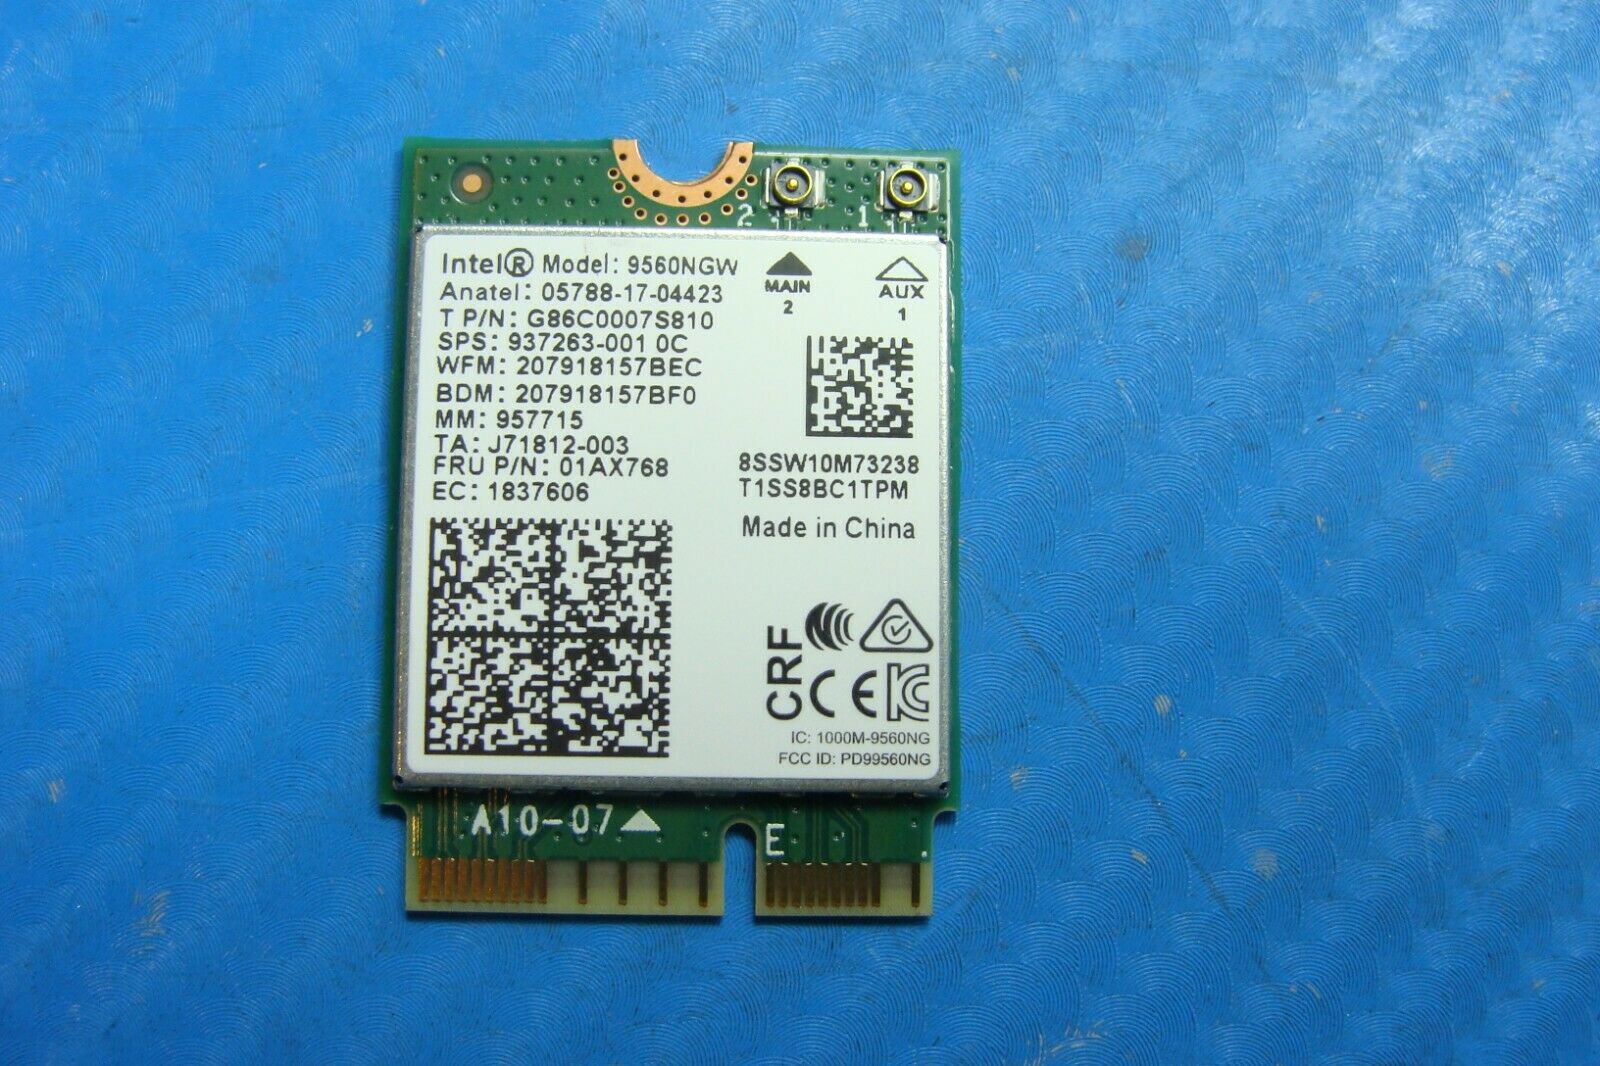 Razer Blade Stealth 13.3 RZ09-0281 Genuine Wireless WiFi Card 9560ngw 